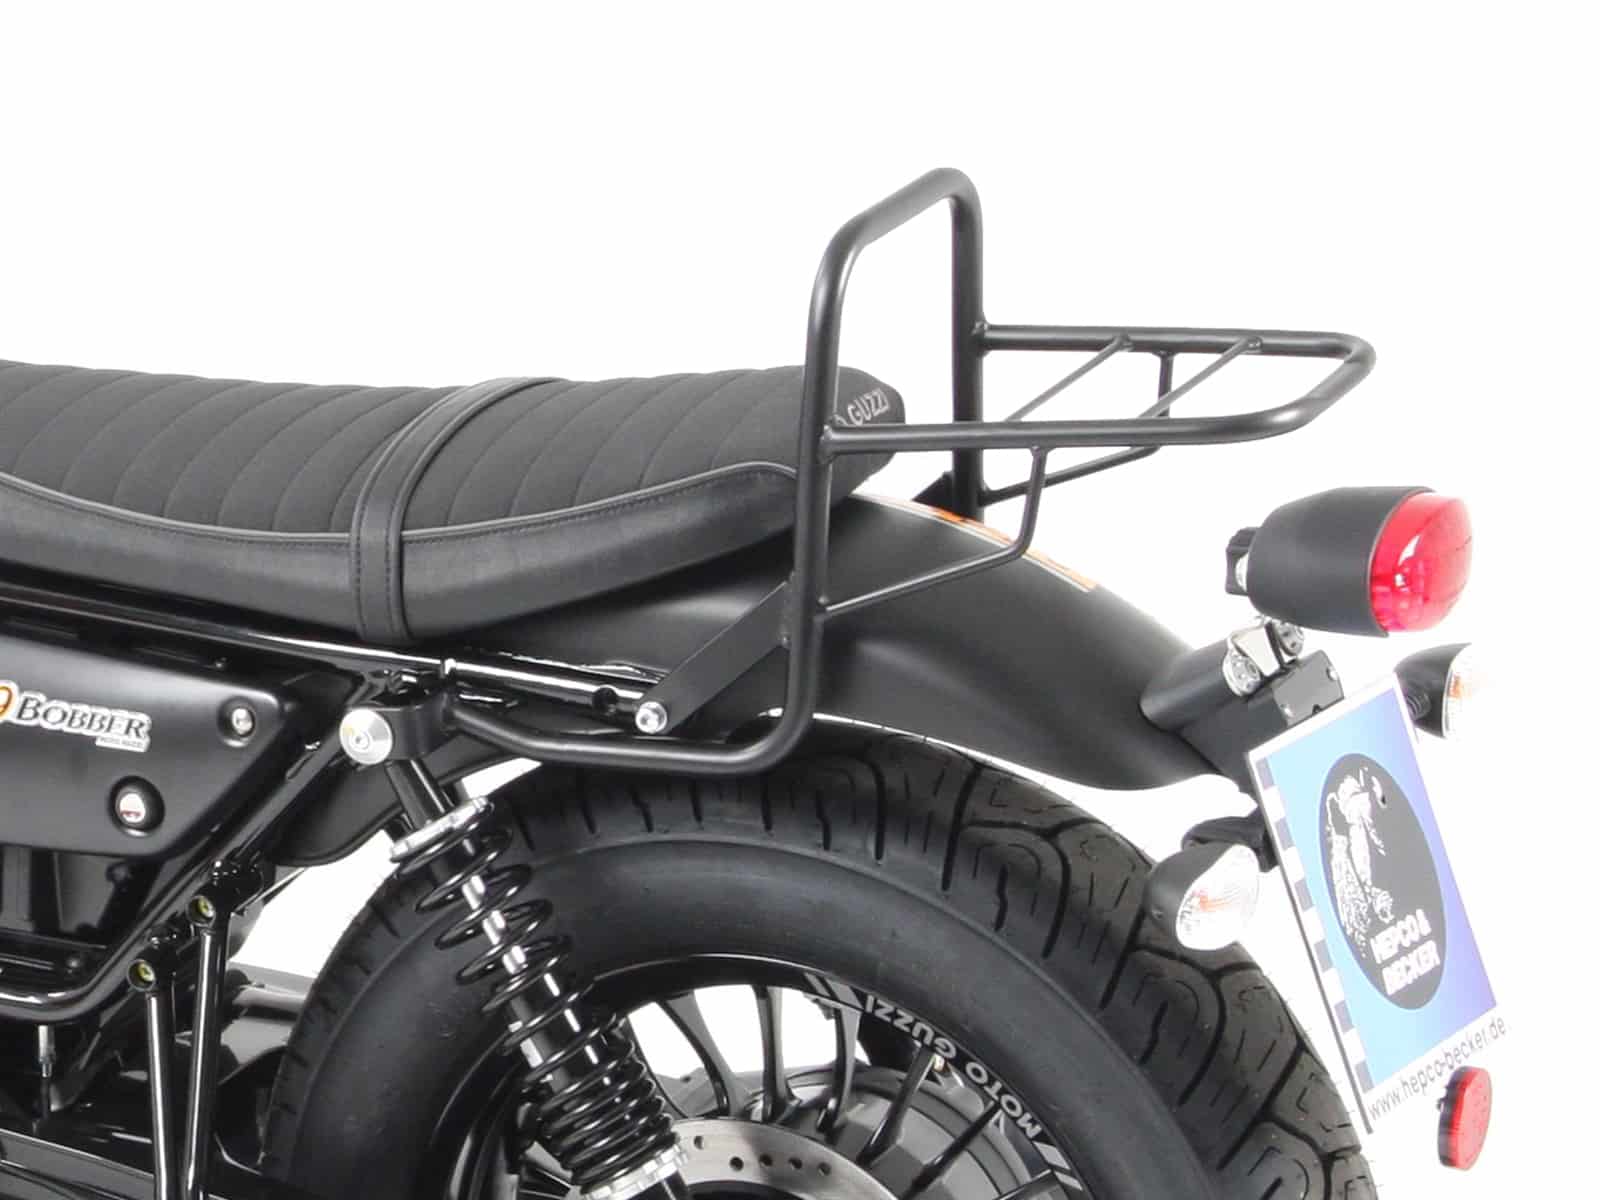 Topcase carrier tube-type black for model with short seat for Moto Guzzi V 9 Bobber (2016-)